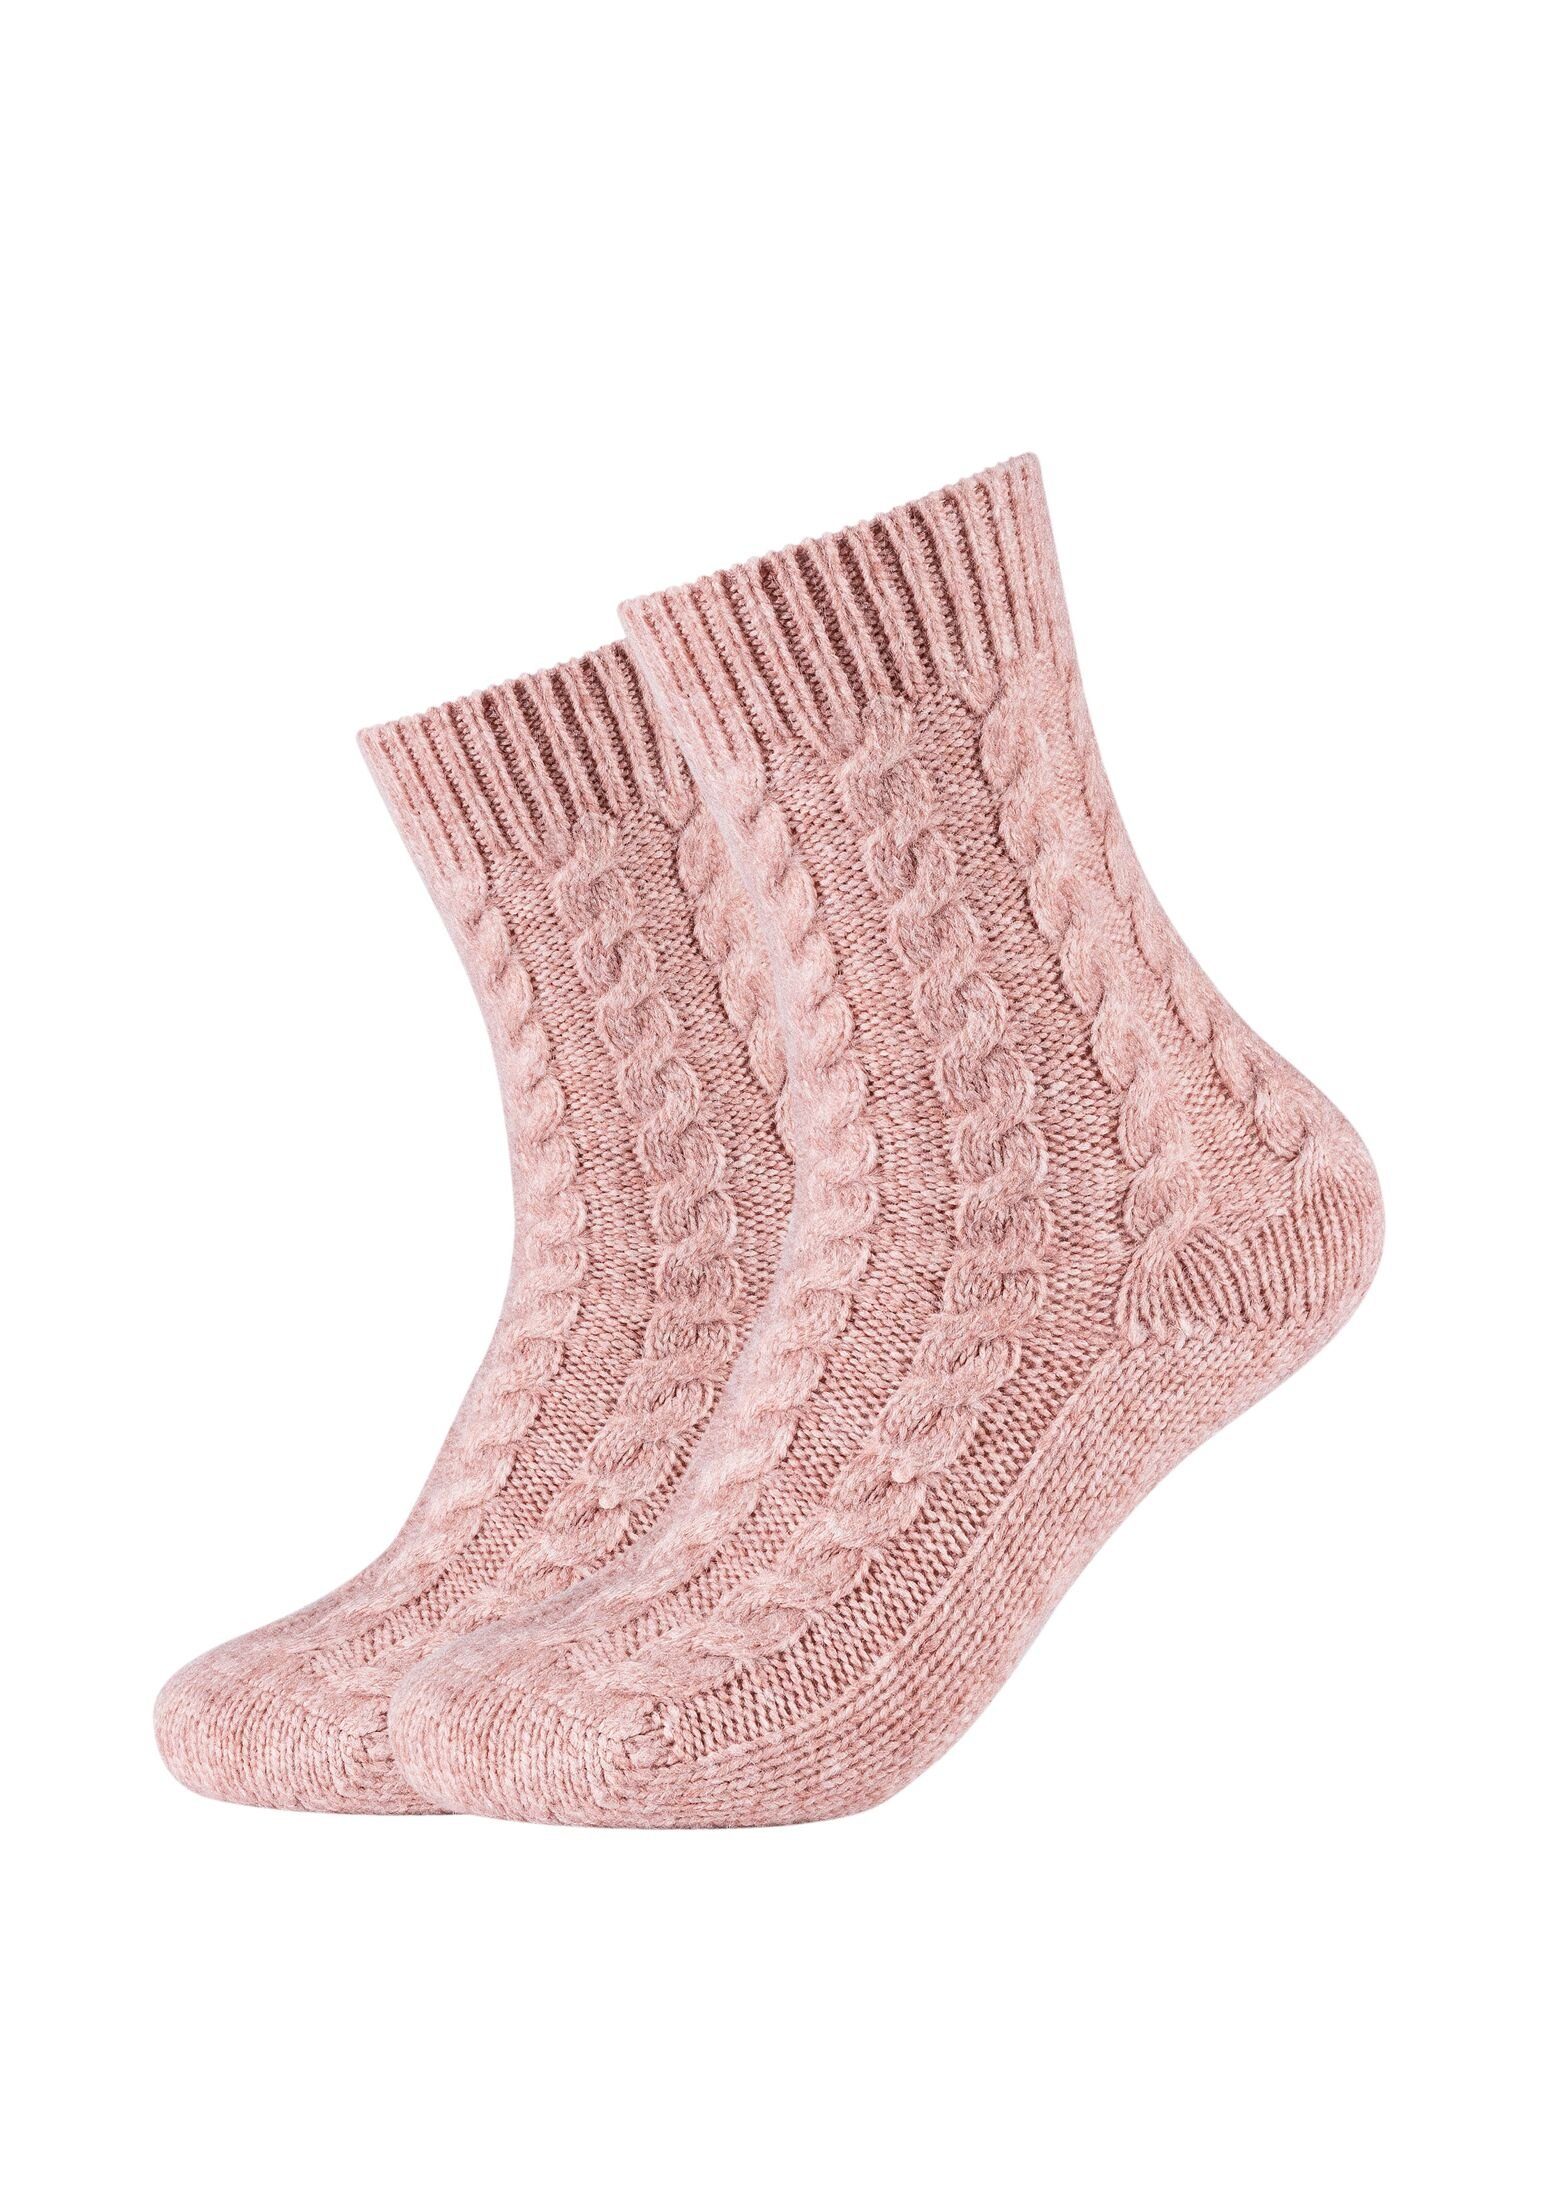 Cosy rose Kuschelsocken Socken Camano Damen Lang dusty Zopfmuster Socken Flauschig Warm